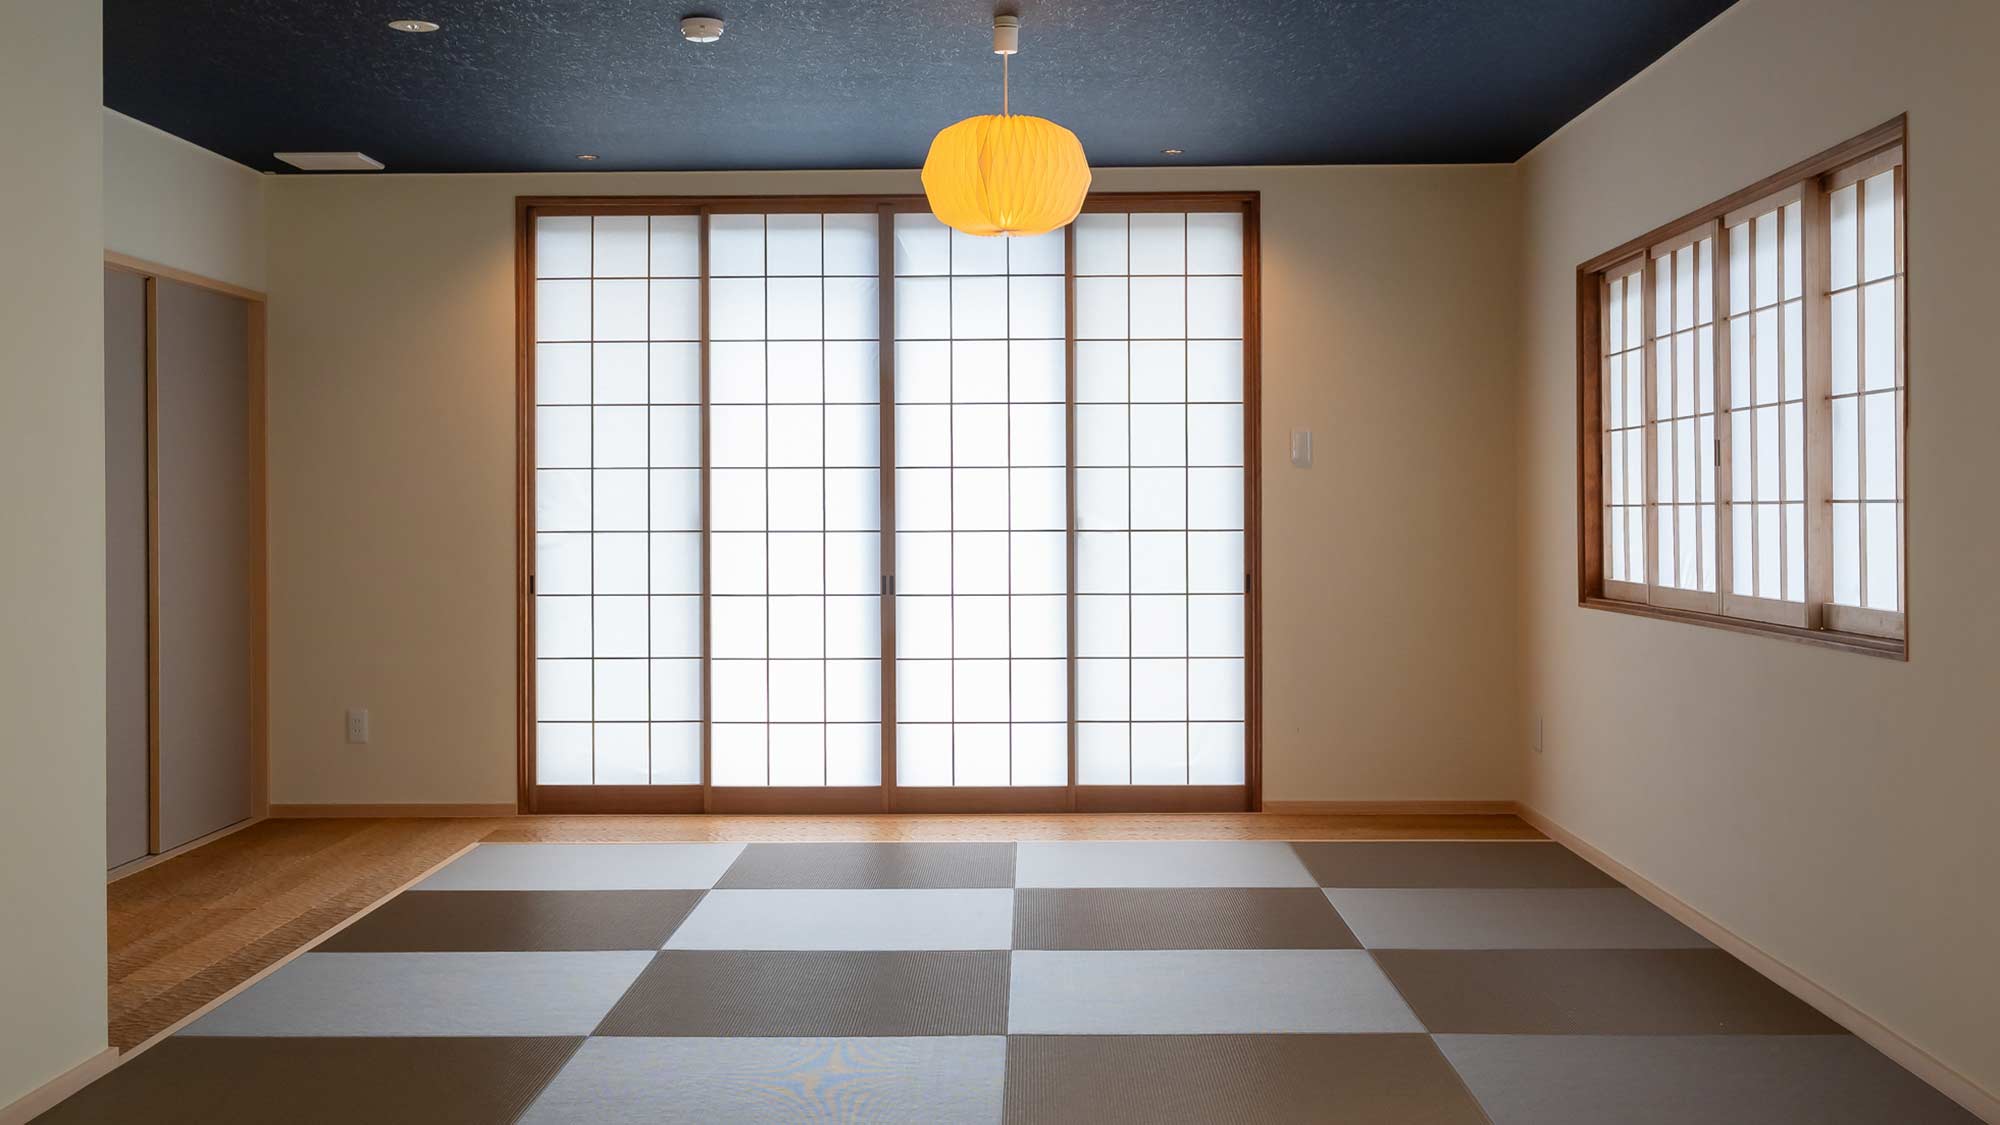 【Hoshiyama】お部屋の仕切りを減らし、自然と一体となれる開放感のある空間。